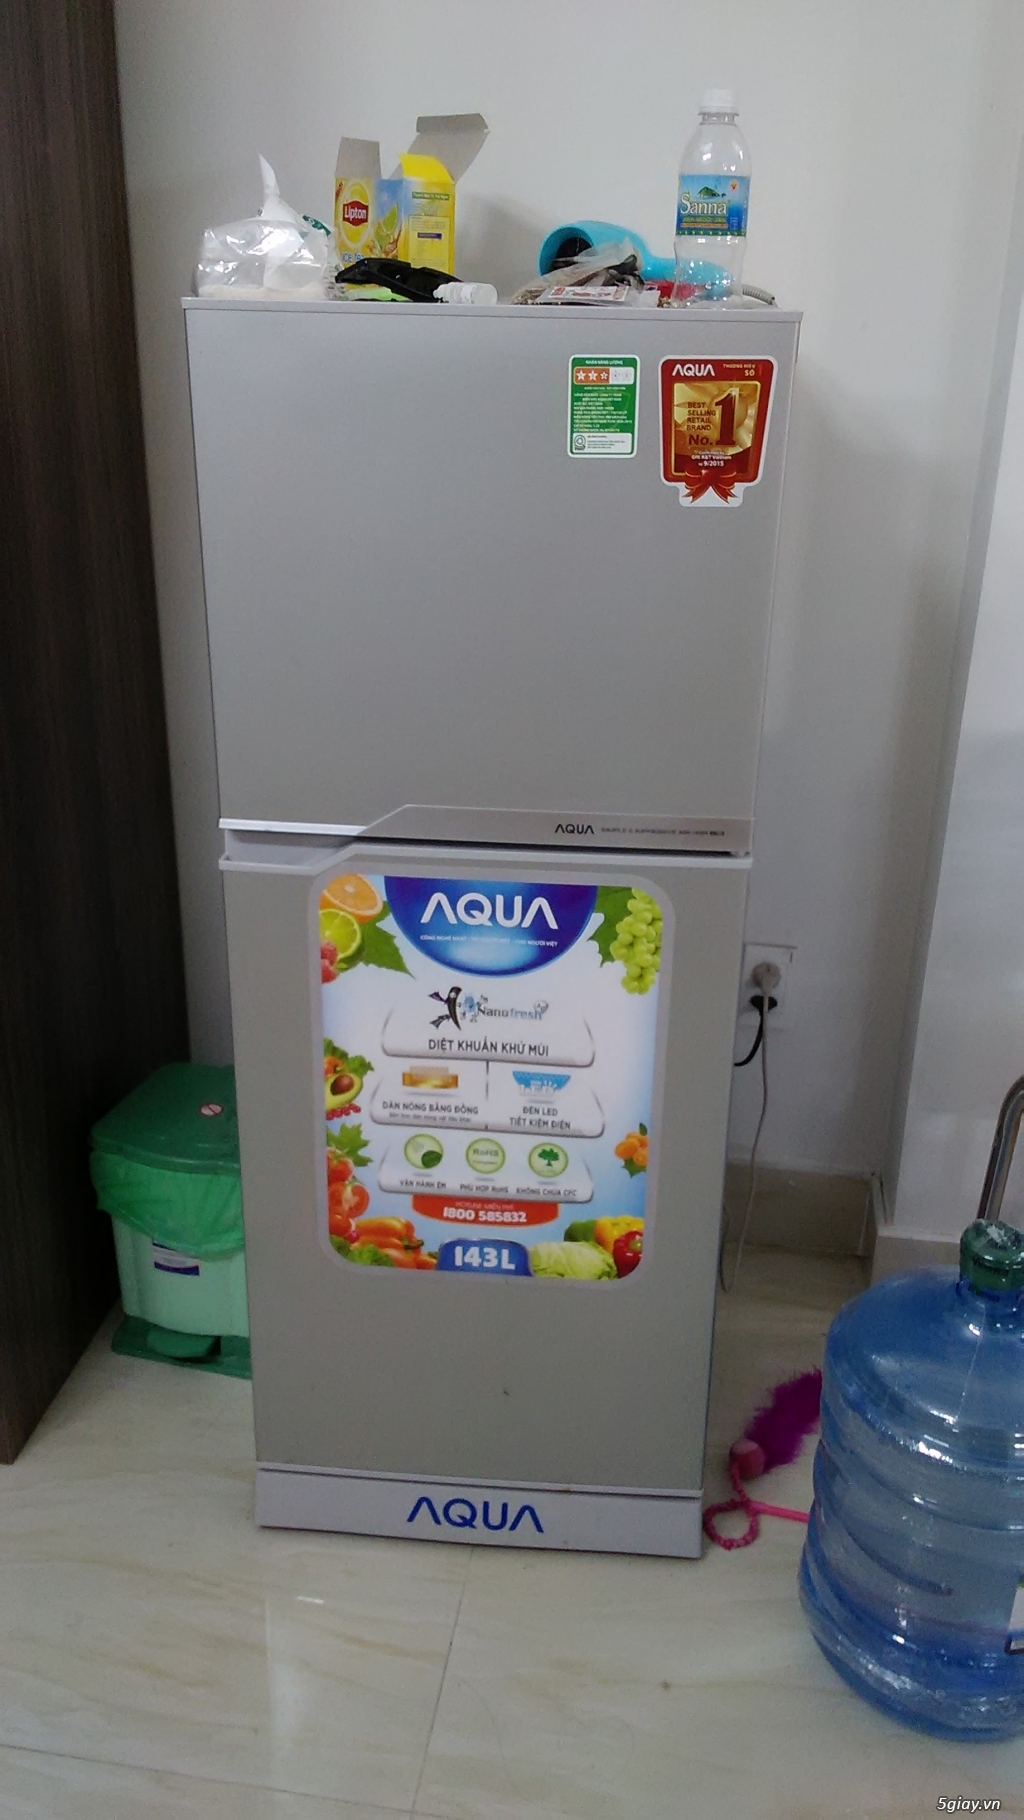 Bán tủ lạnh Aqua 143L còn 18 tháng bảo hành (Nguyễn Kim) ở Tân Bình